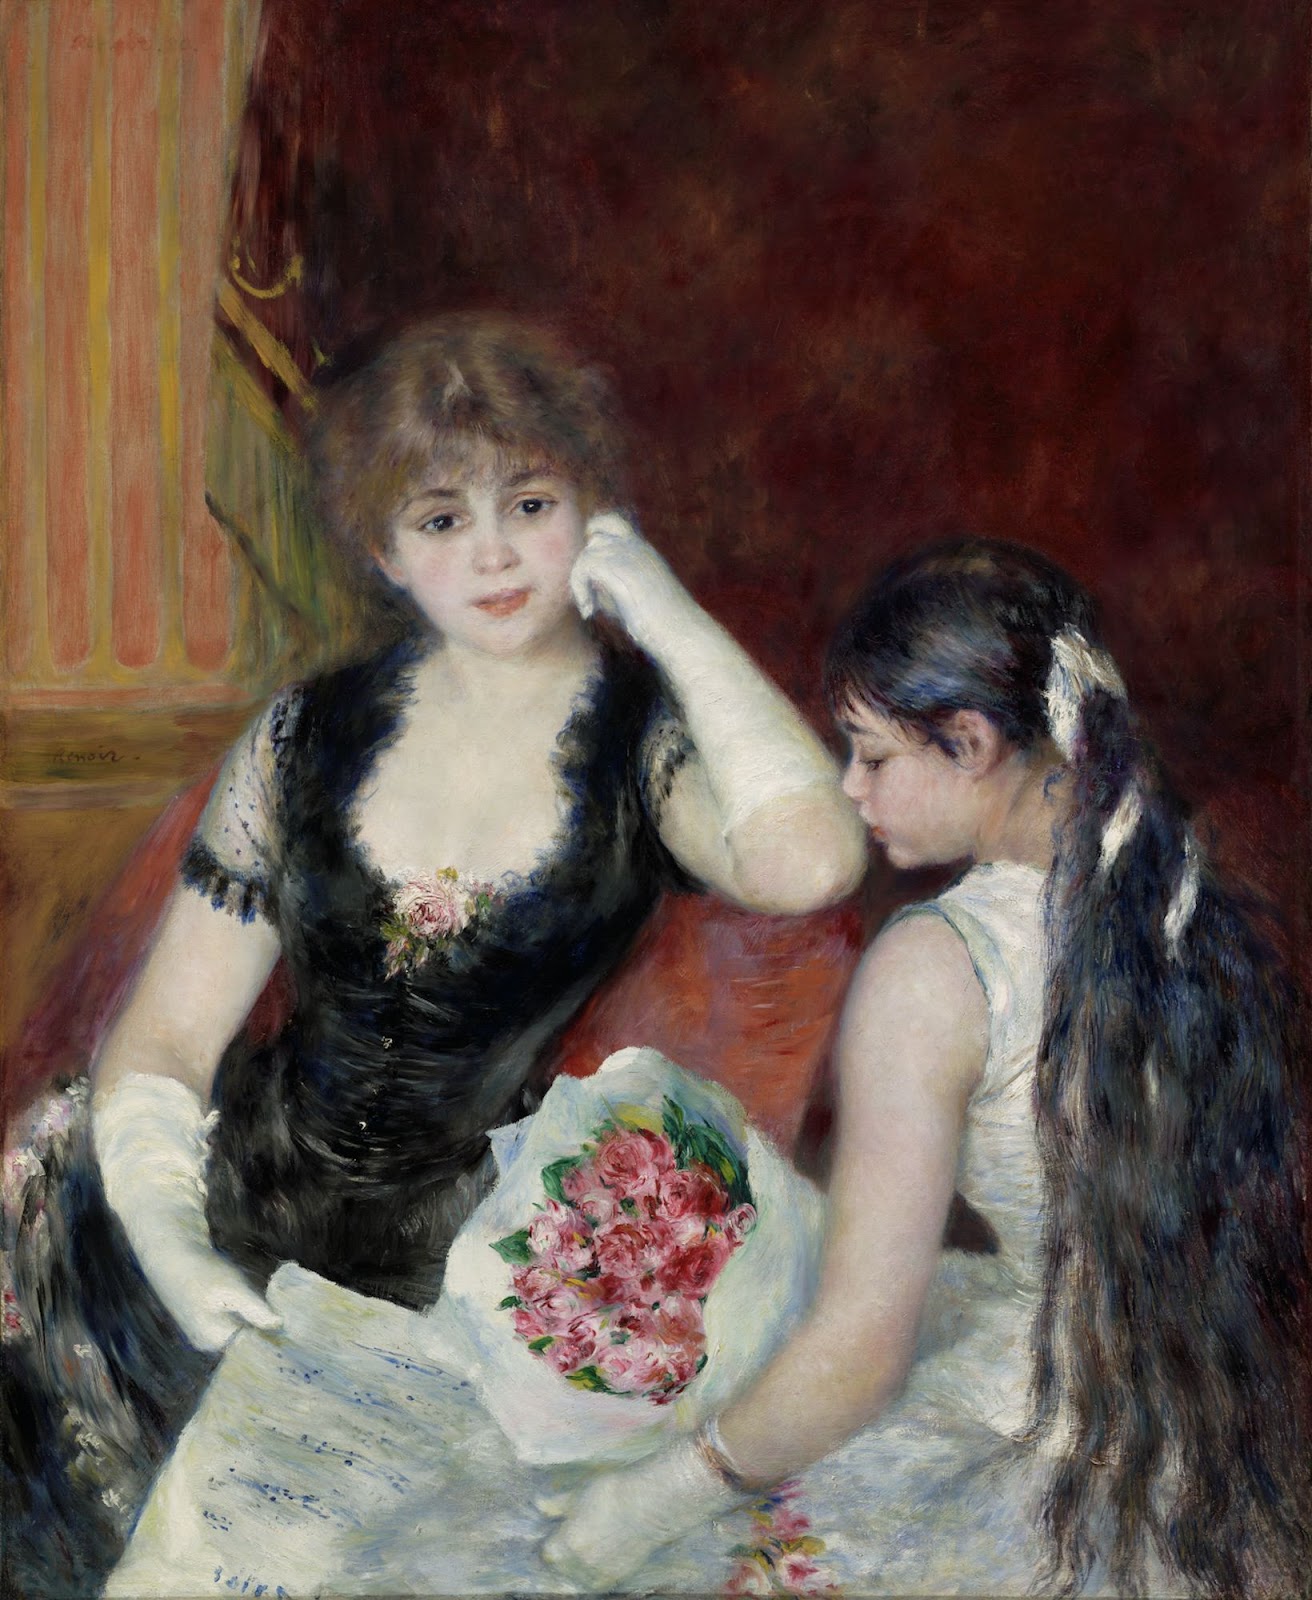 Pierre+Auguste+Renoir-1841-1-19 (788).jpg